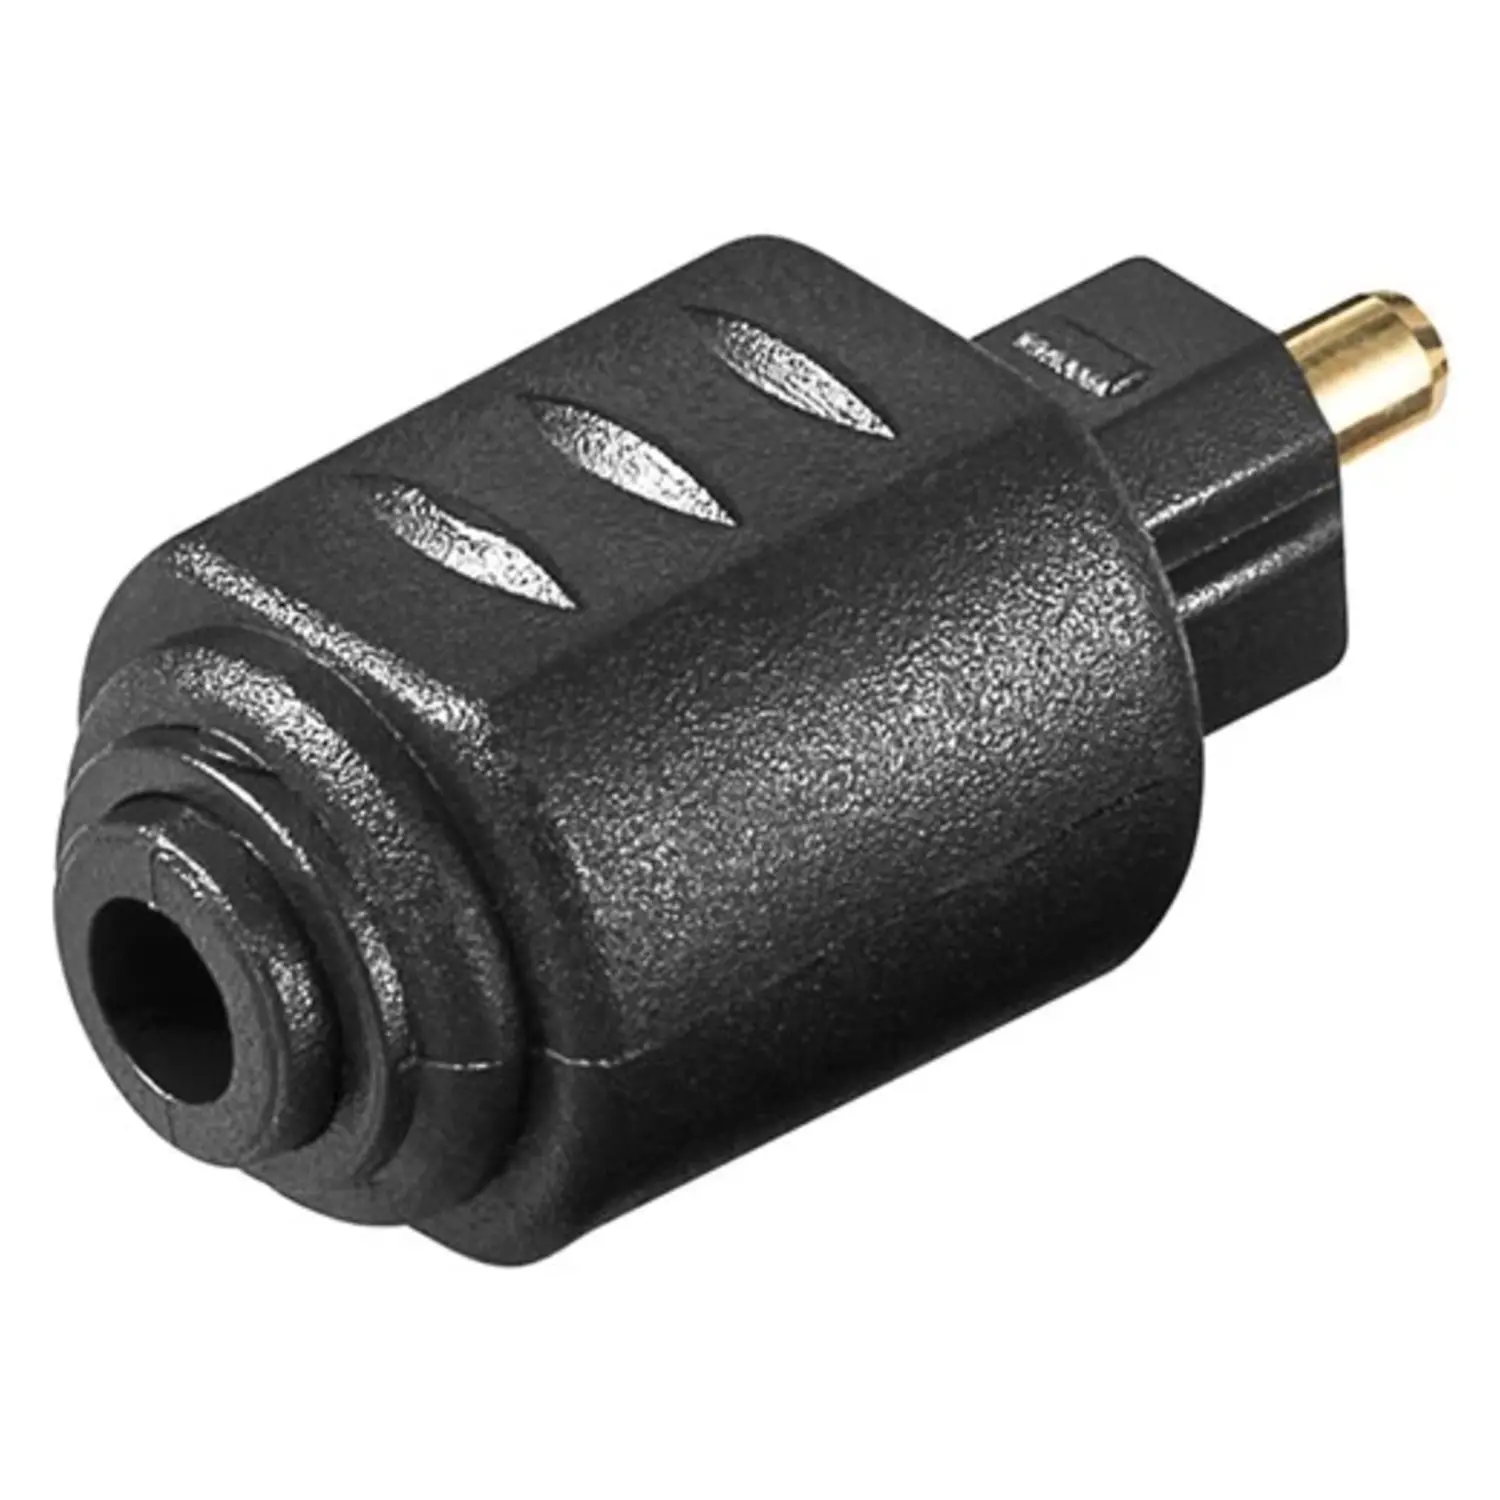 immagine del prodotto adattatore audio digitale toslink da mini a spina toslink nero